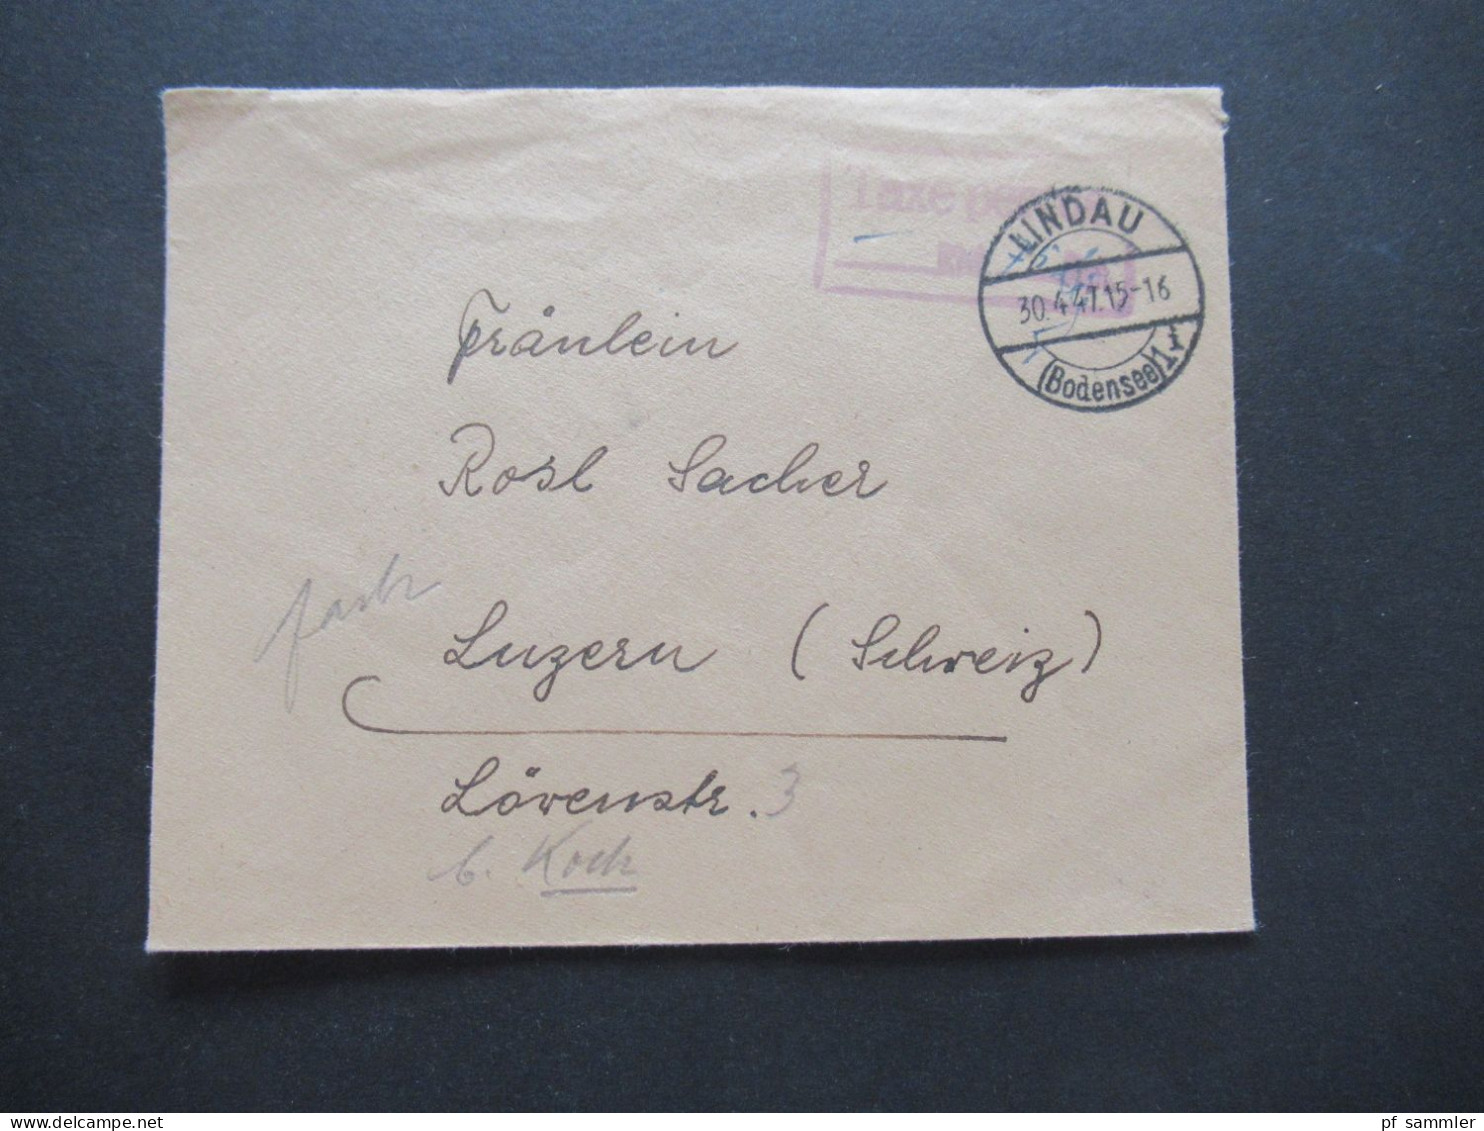 1947 Französische Zone Stp. Lindau Bodensee Und Violetter Ra2 Taxe Percue Auslandsbrief Nach Luzern Schweiz / Gebühr Bez - Amtliche Ausgaben